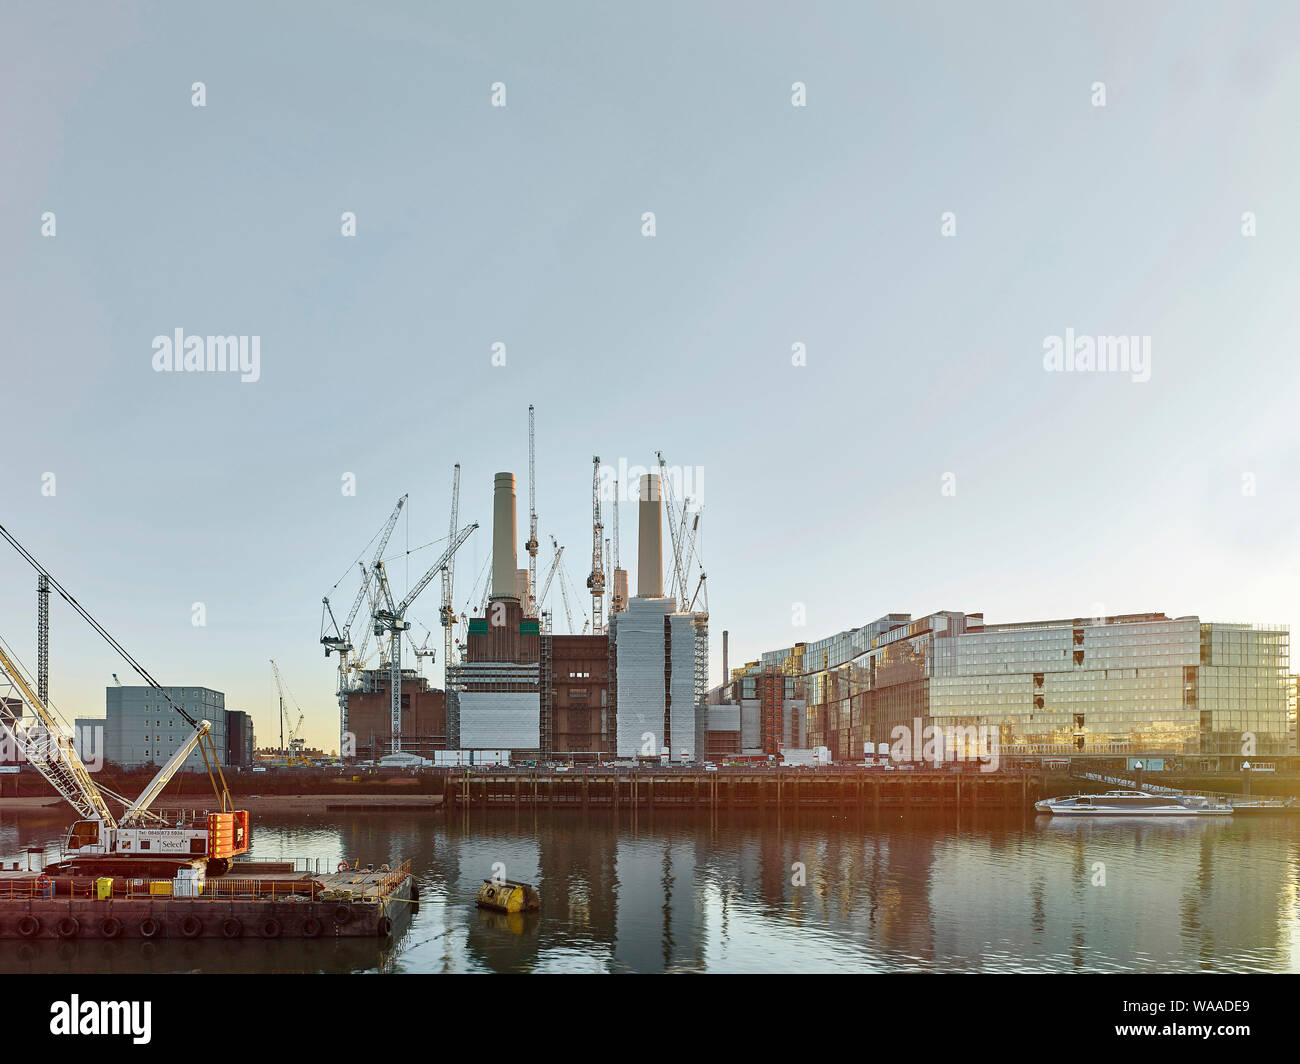 Fernblick über die Themse mit Lastkähnen und Clipper. Battersea Power Station 2019, London, Vereinigtes Königreich. Architekt: Verschiedene, 2019. Stockfoto